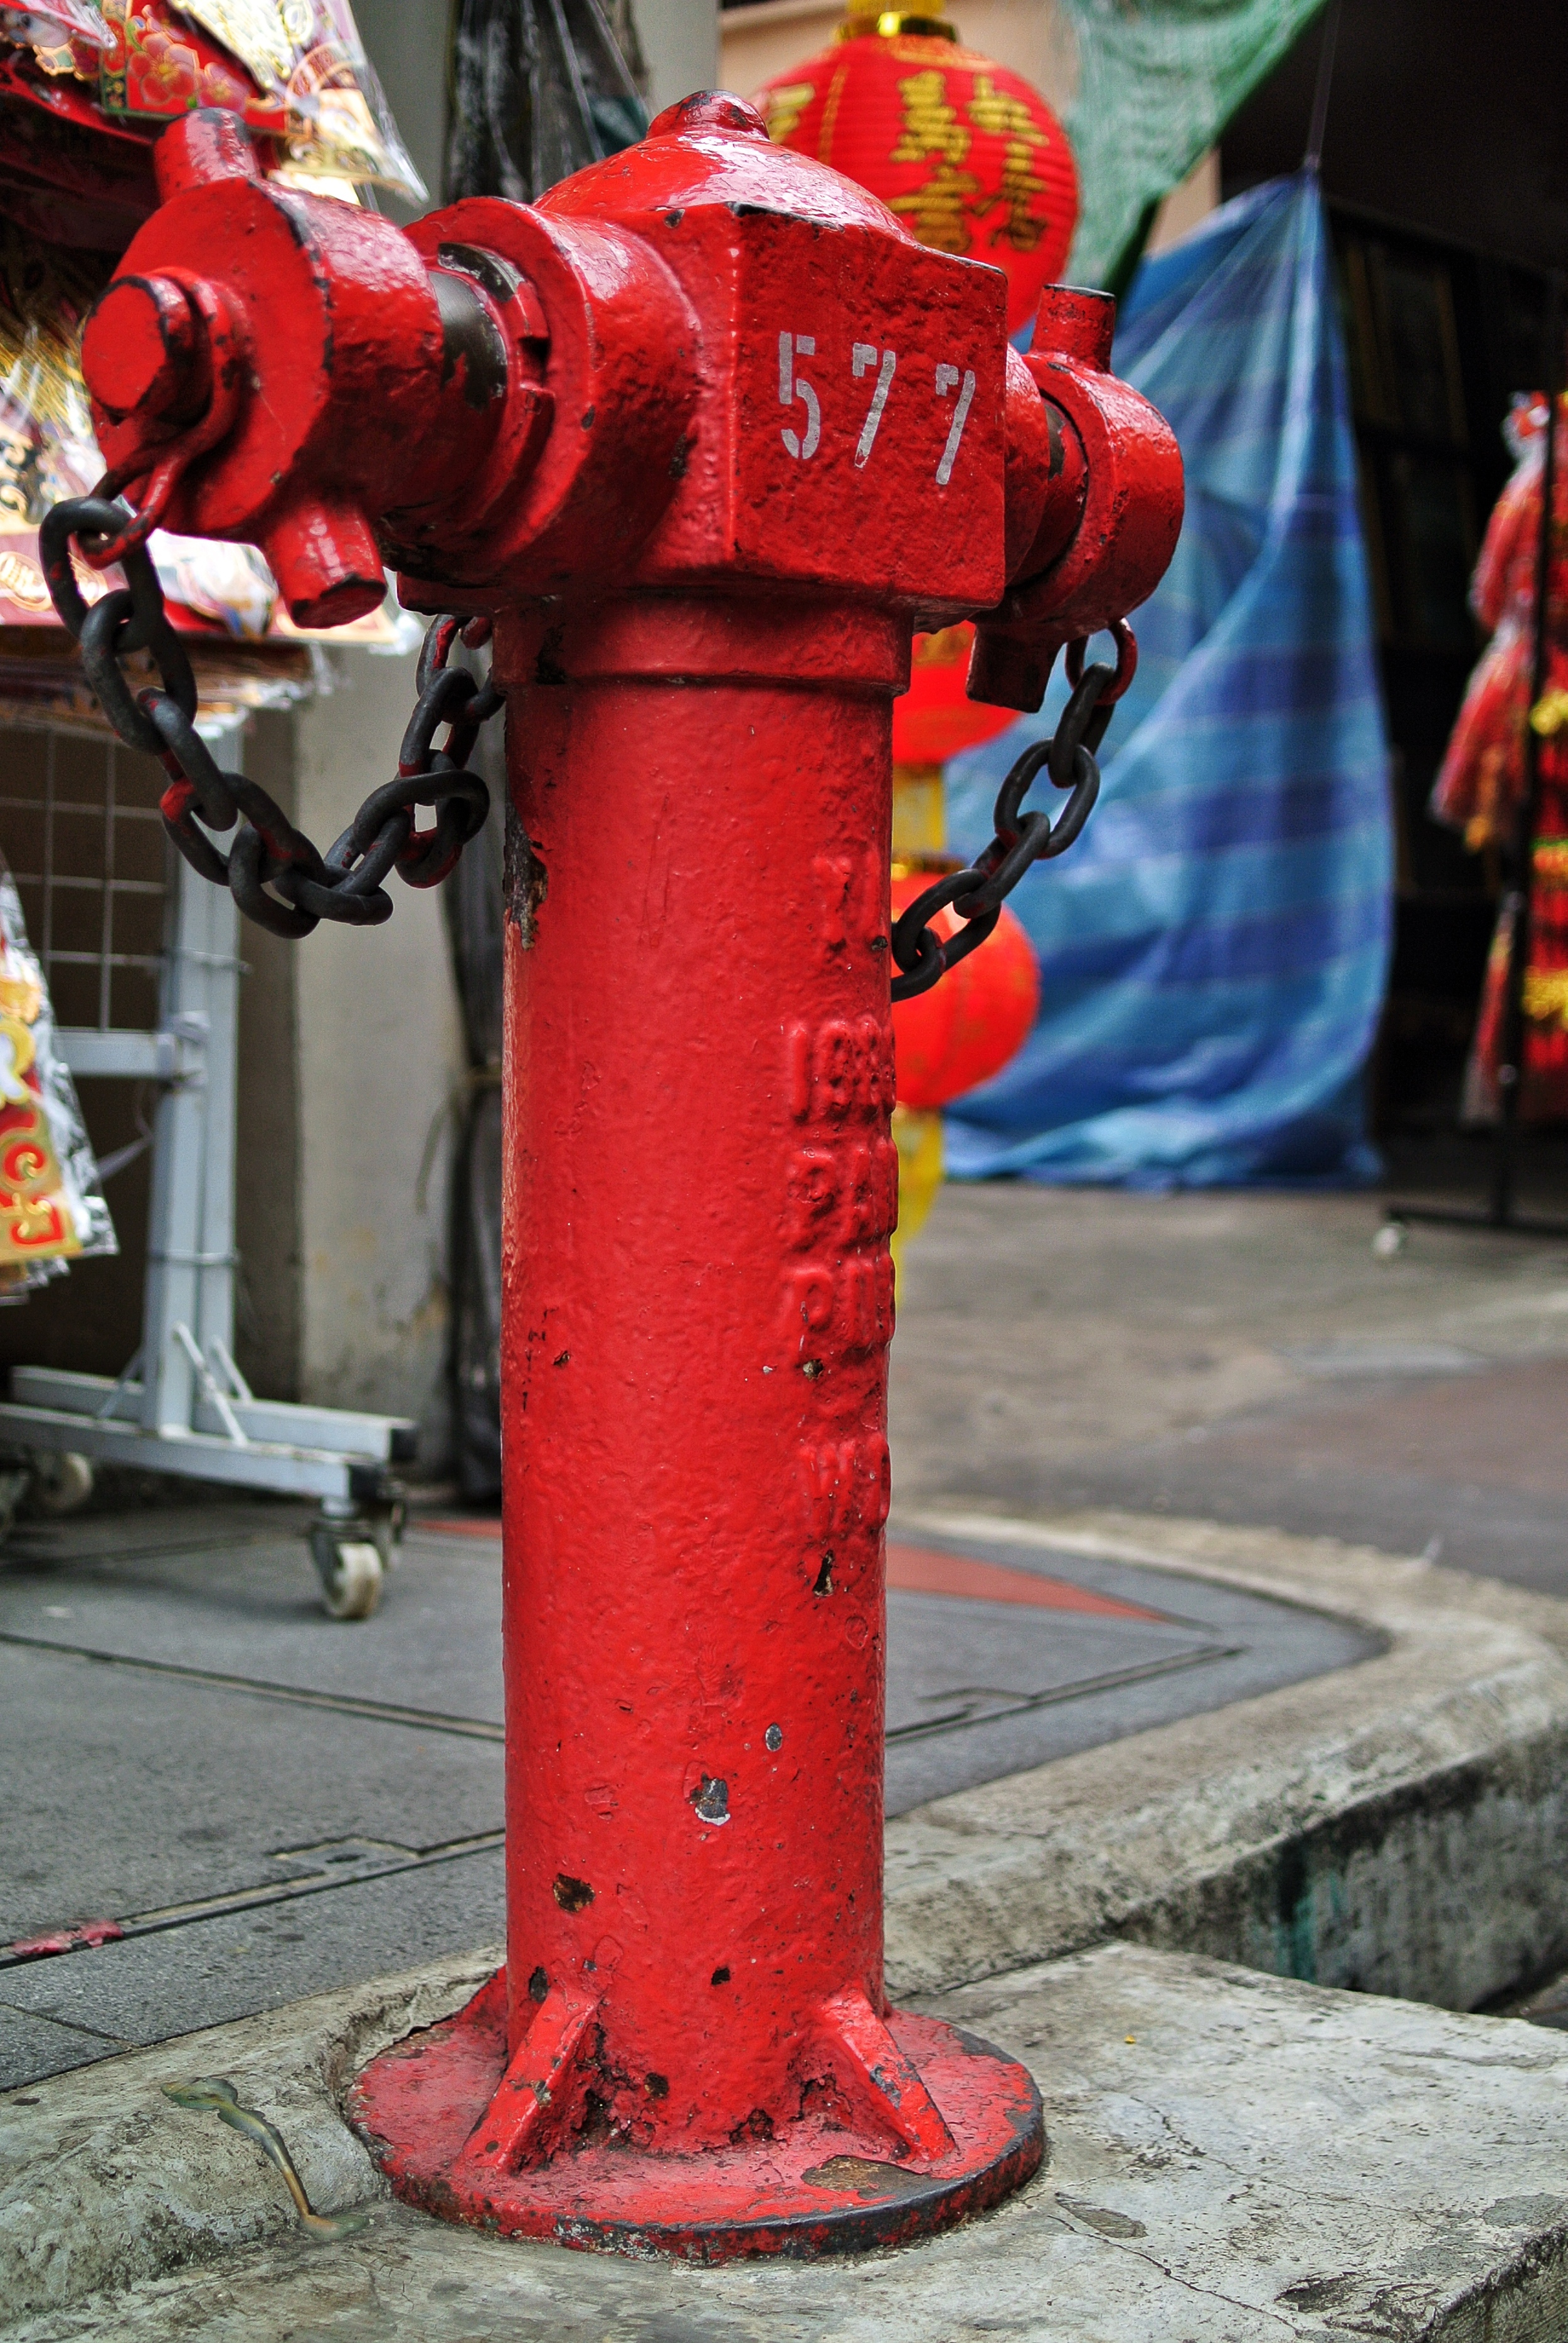    Trengganu Street Hydrant   